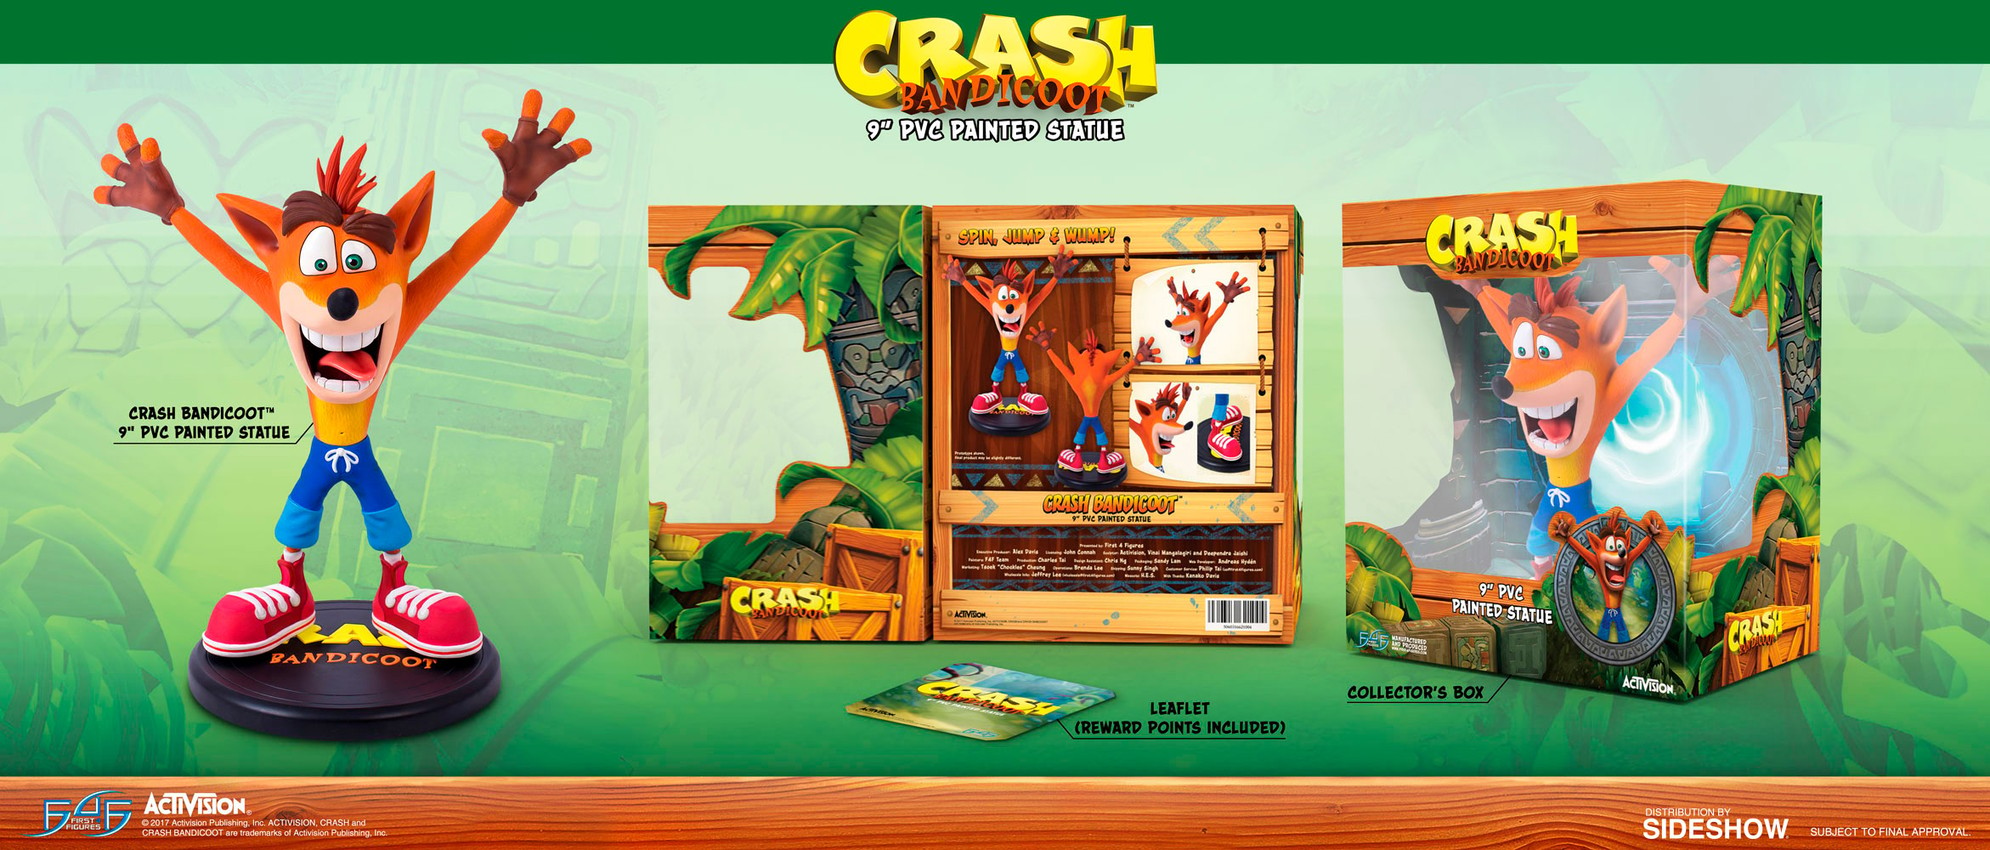 Crash Bandicoot- Prototype Shown View 3